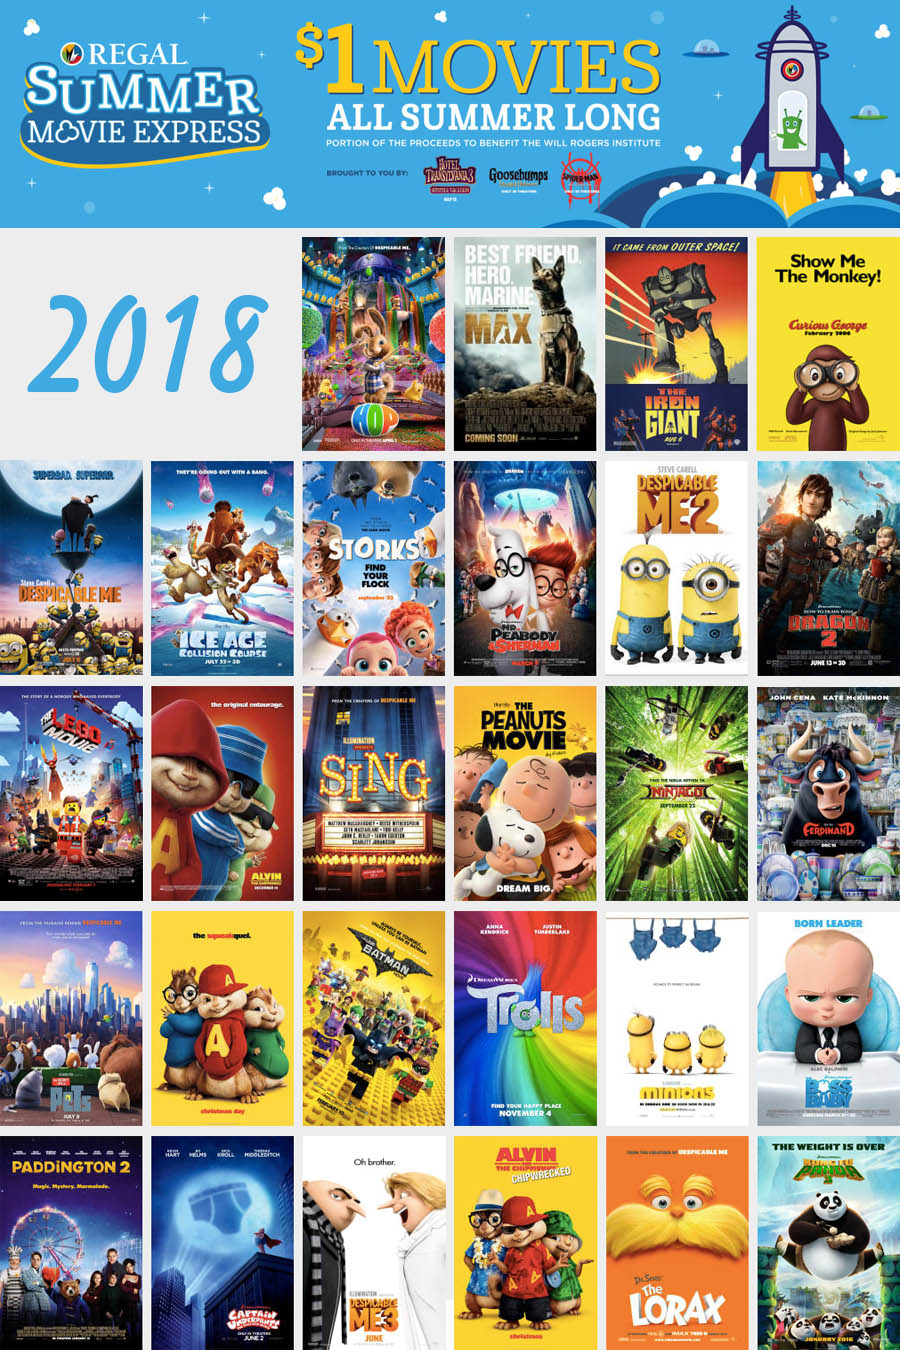 2018 Summer Movie Deals — Regal Summer Movie Express